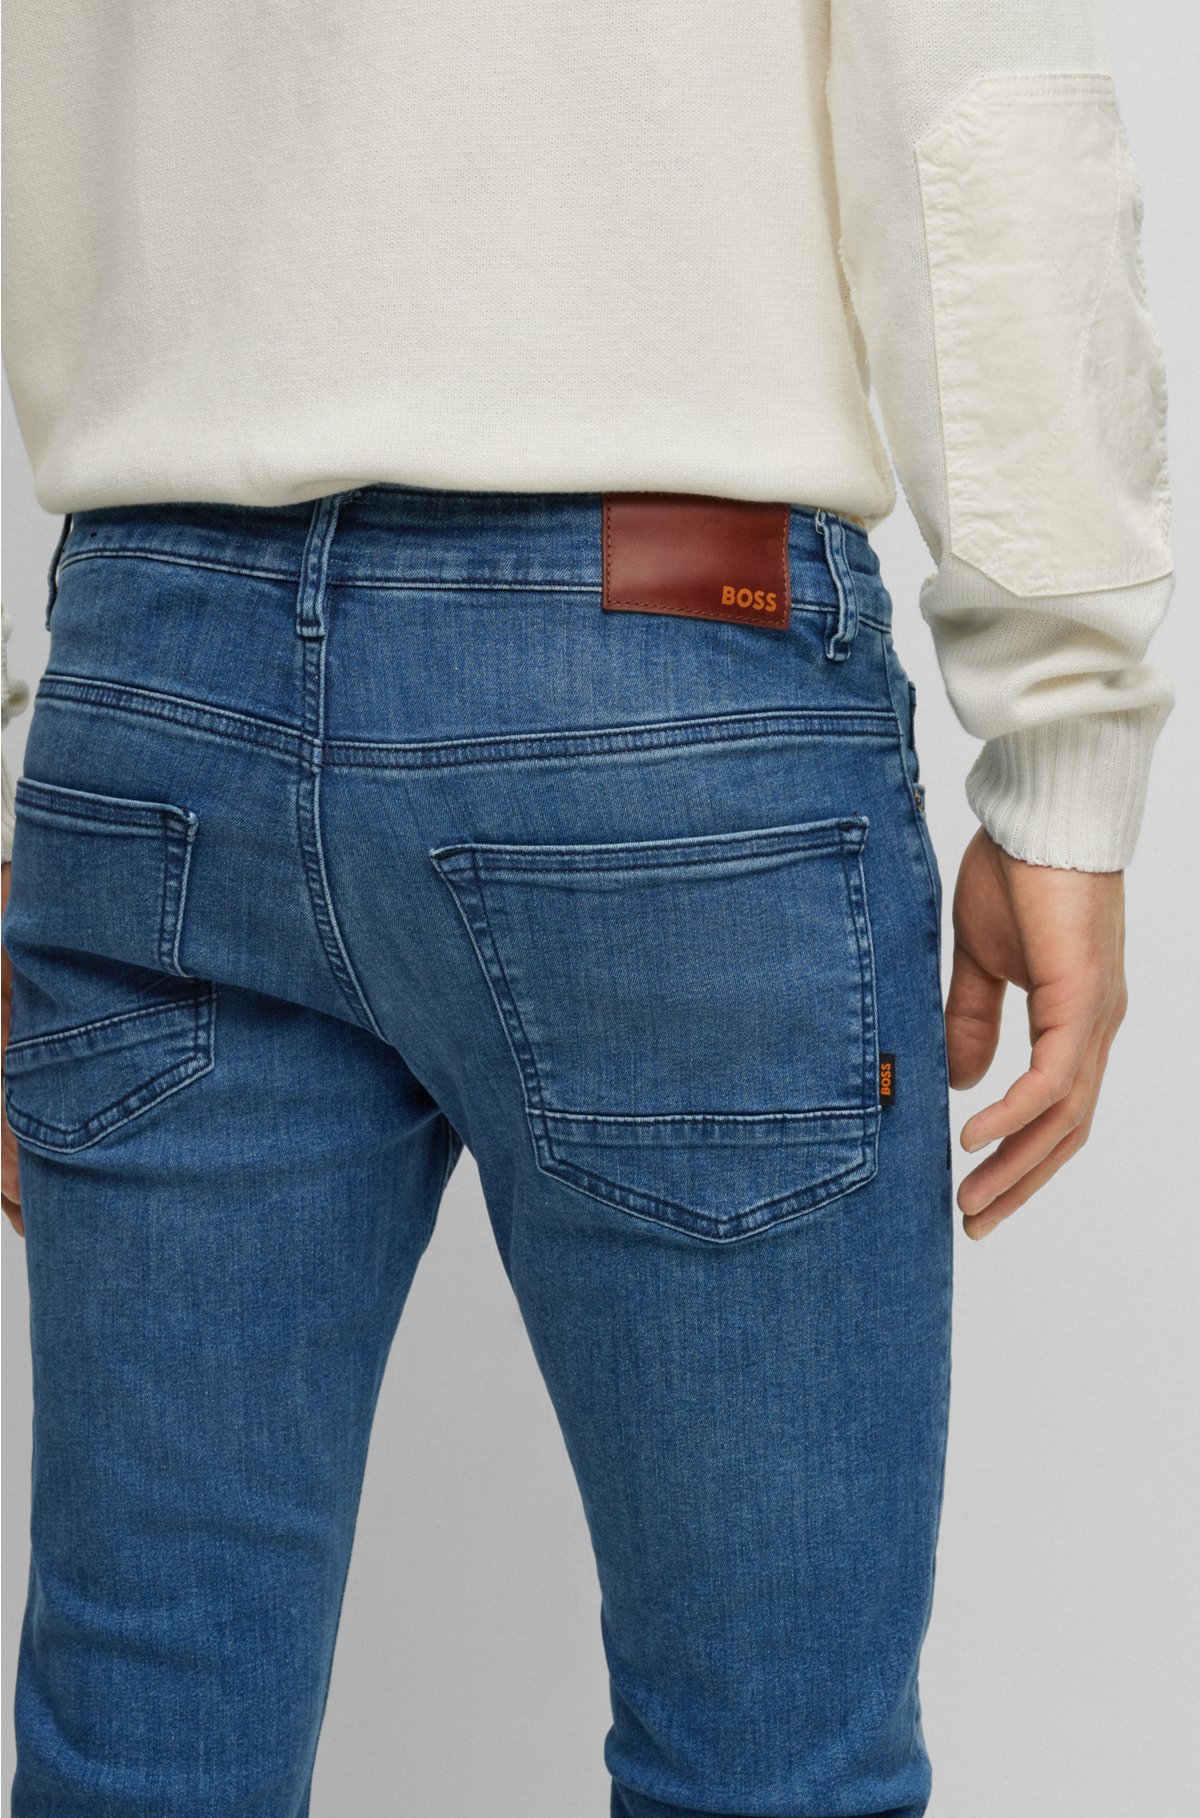 BOSS - Slim-fit jeans blue in denim super-stretch